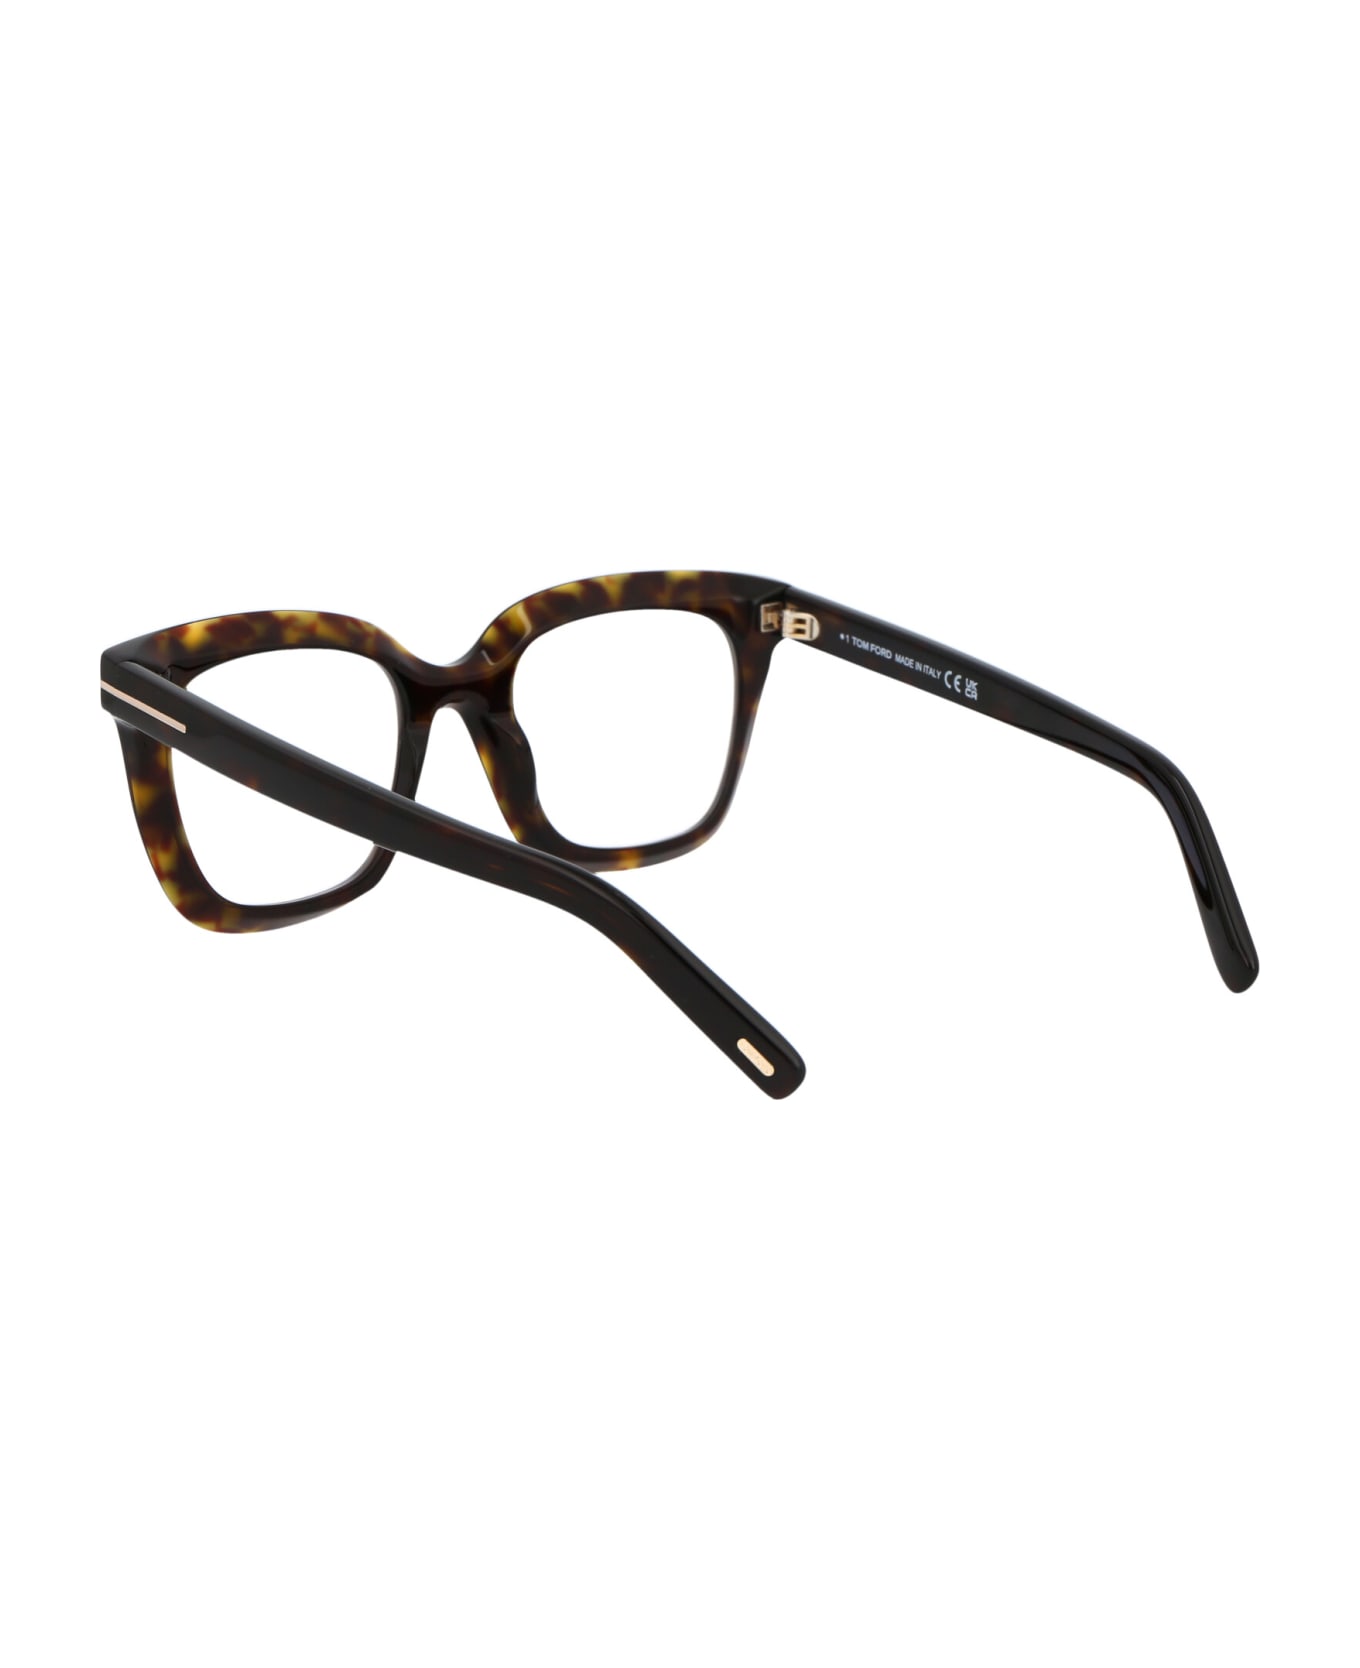 Tom Ford Eyewear Ft5880-b Glasses - 052 Avana Scura